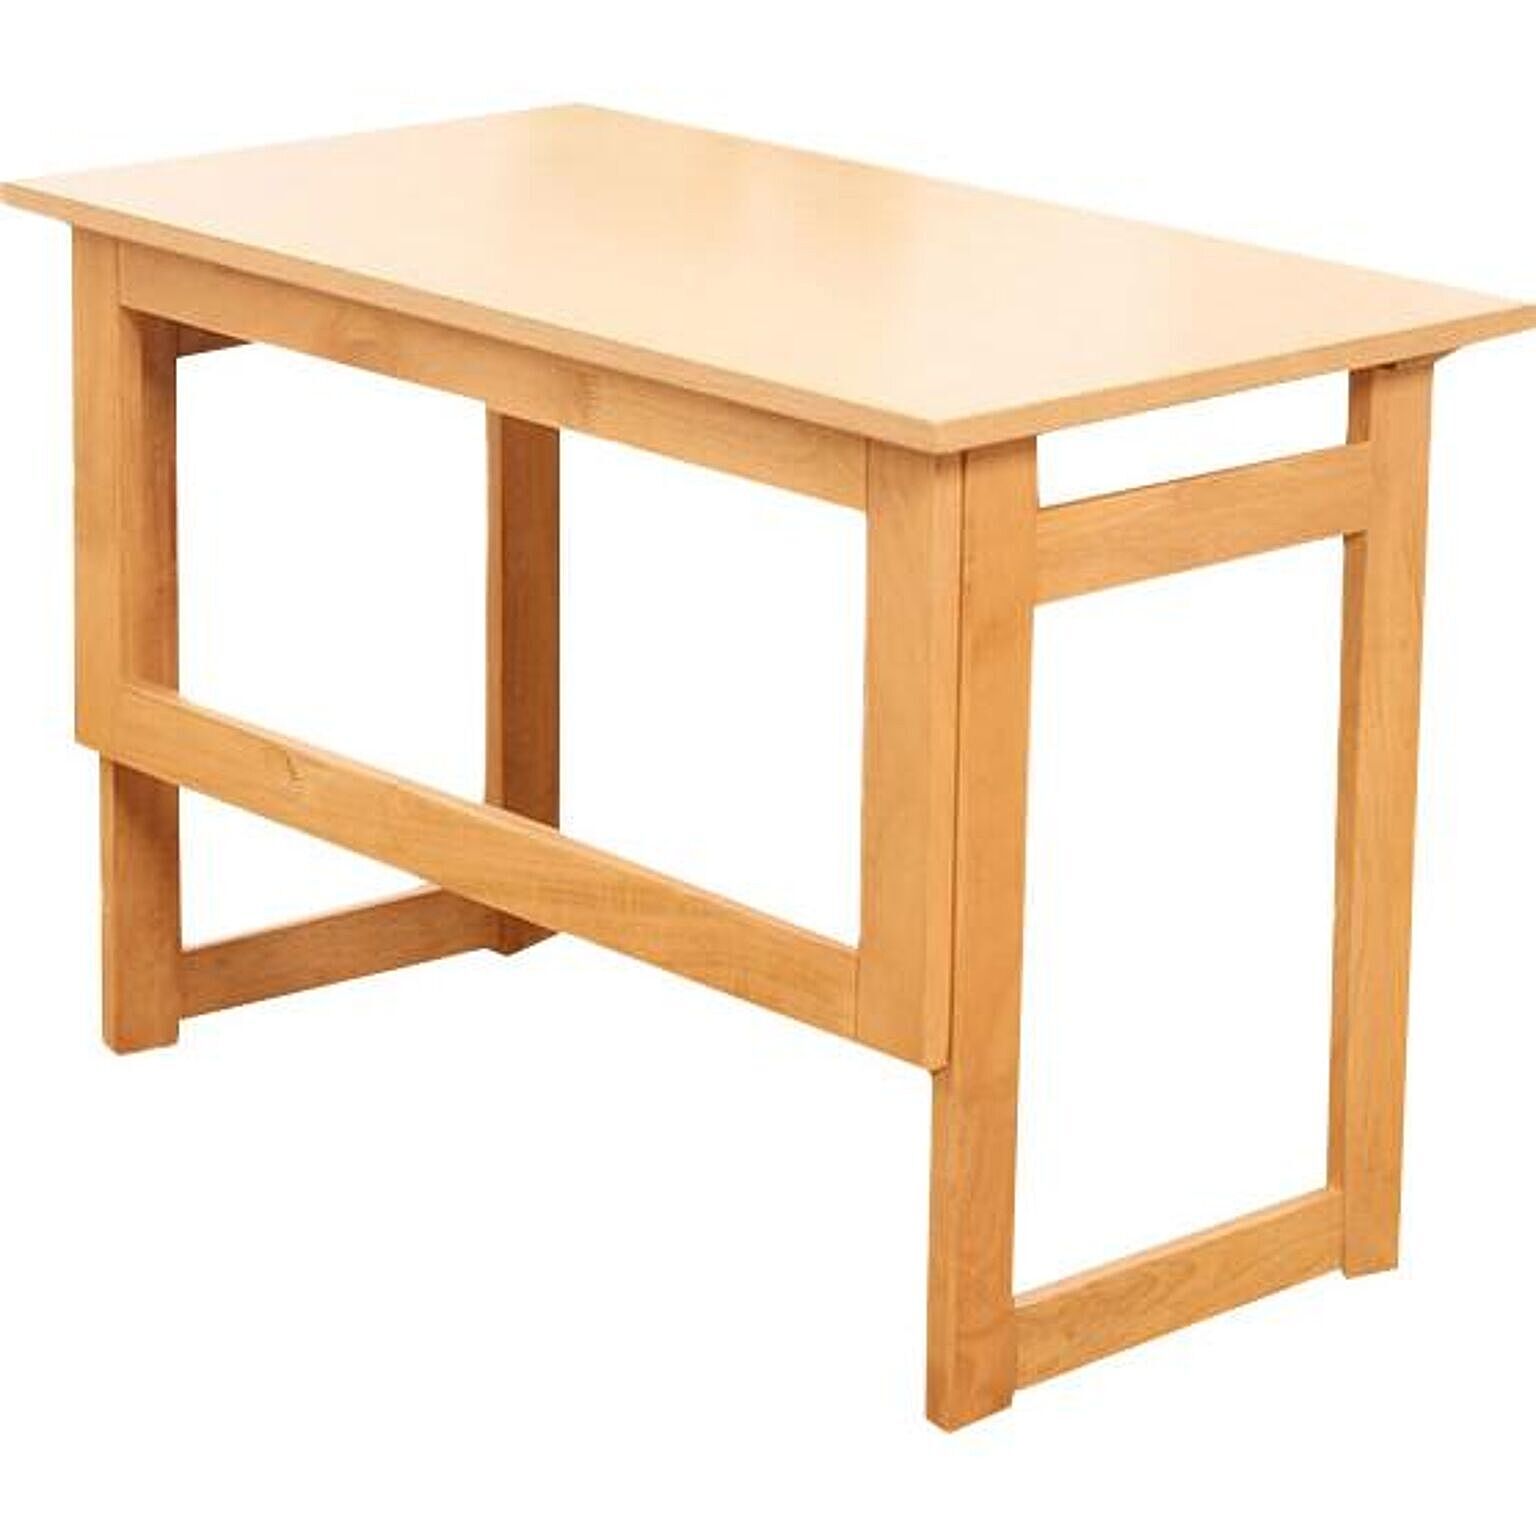 折りたたみテーブル サイドテーブル 完成品 高さ55cm 天然木 補助テーブル